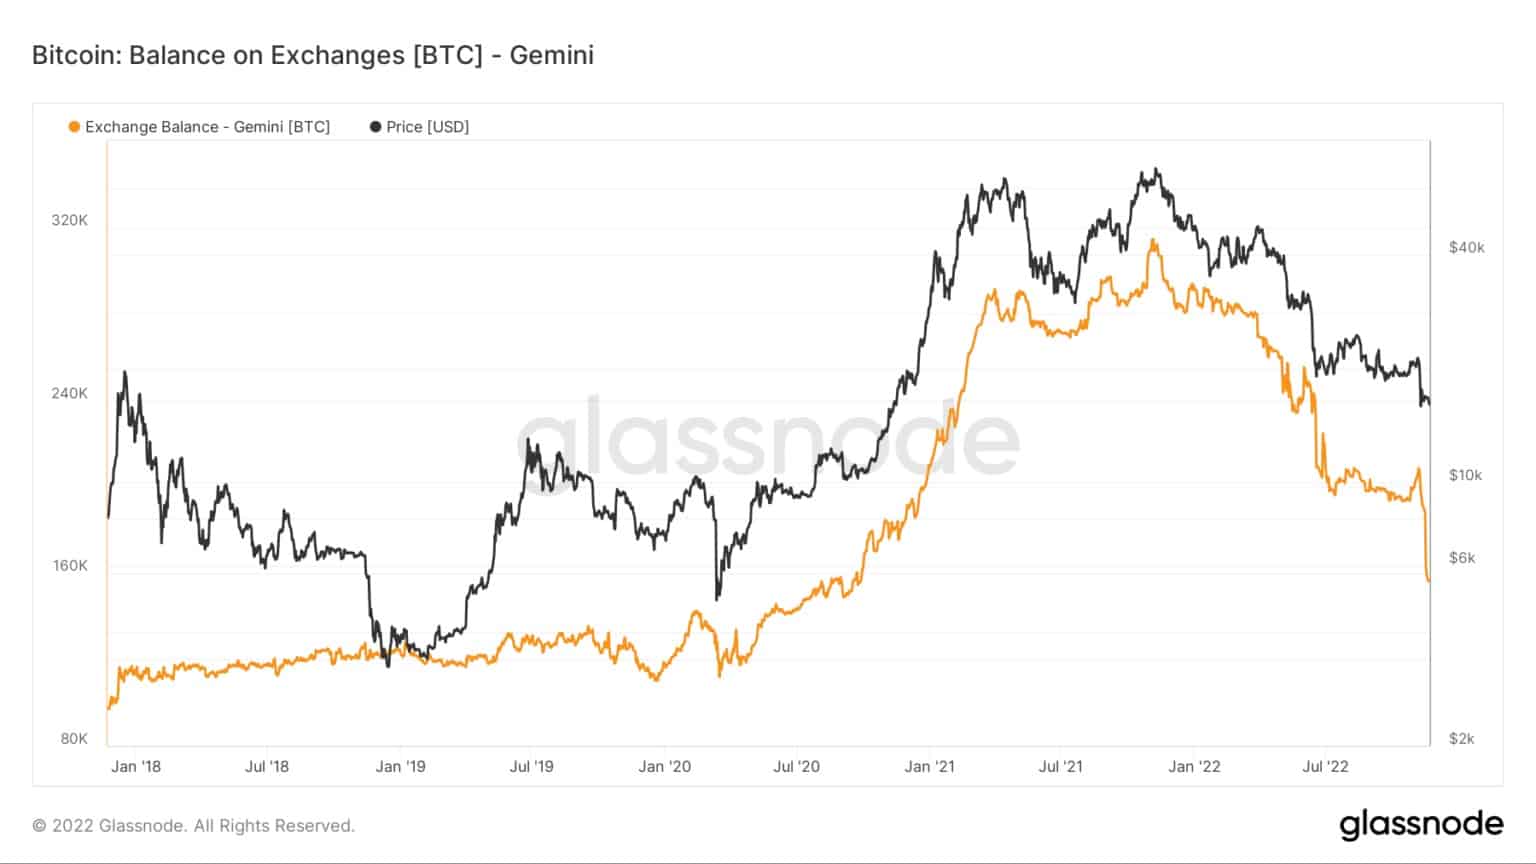 Grafiek met Bitcoin-saldi op de Gemini-beurs van 2016 tot 2022 (Bron: Glassnode)